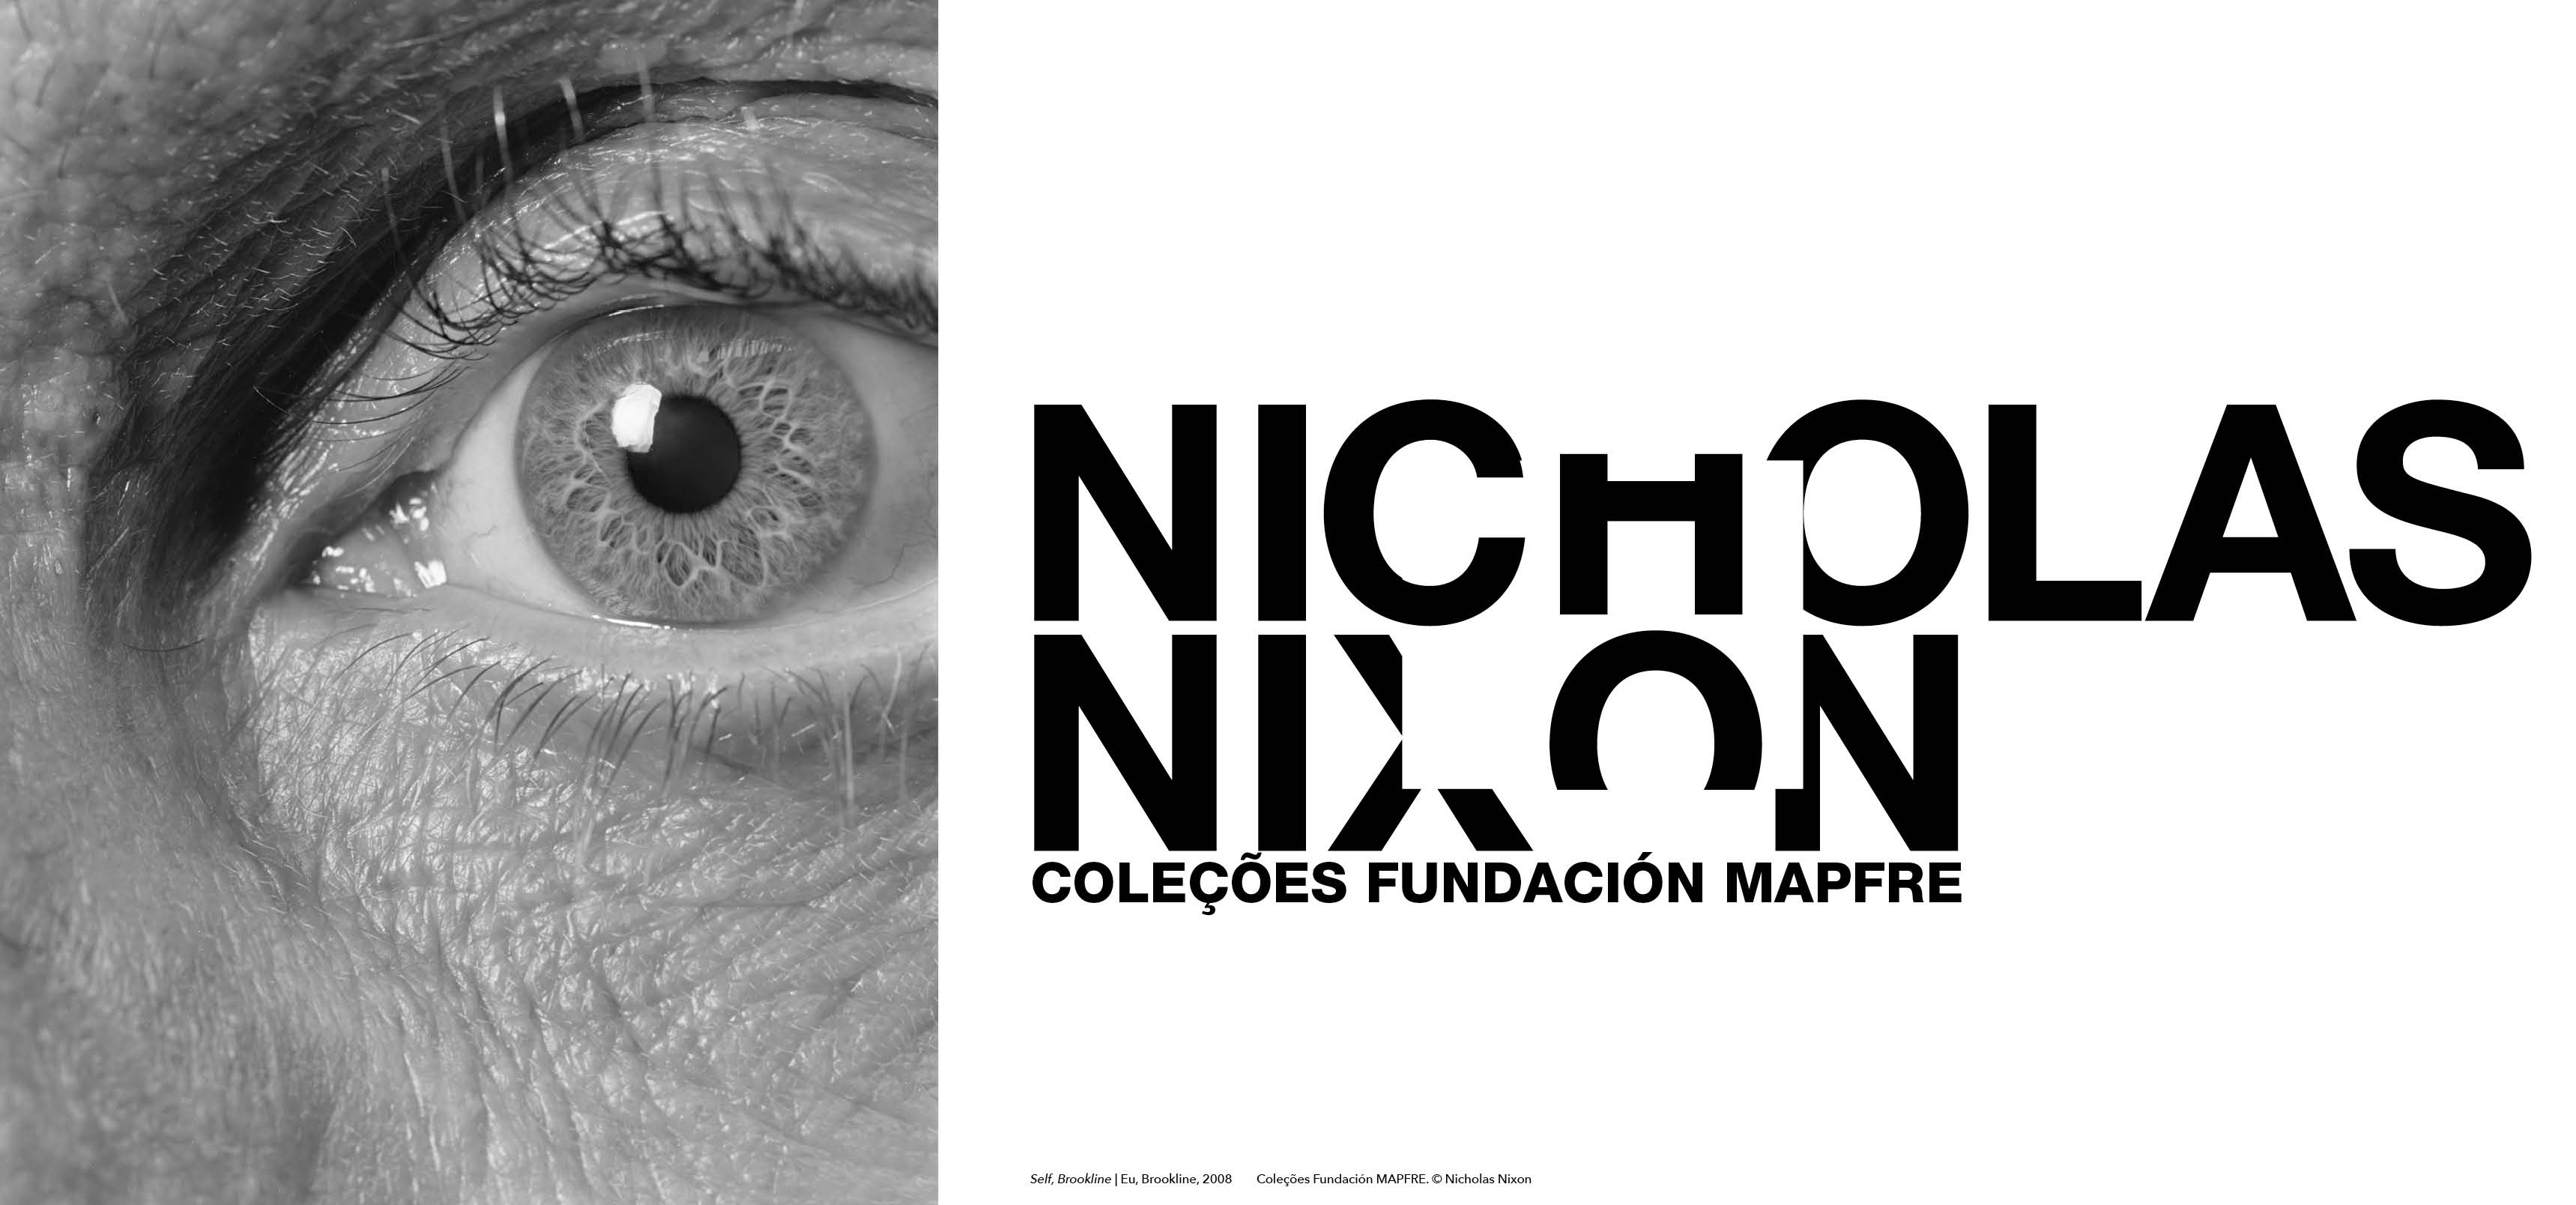 Nicholas Nixon - Coleções Fundación MAPFRE